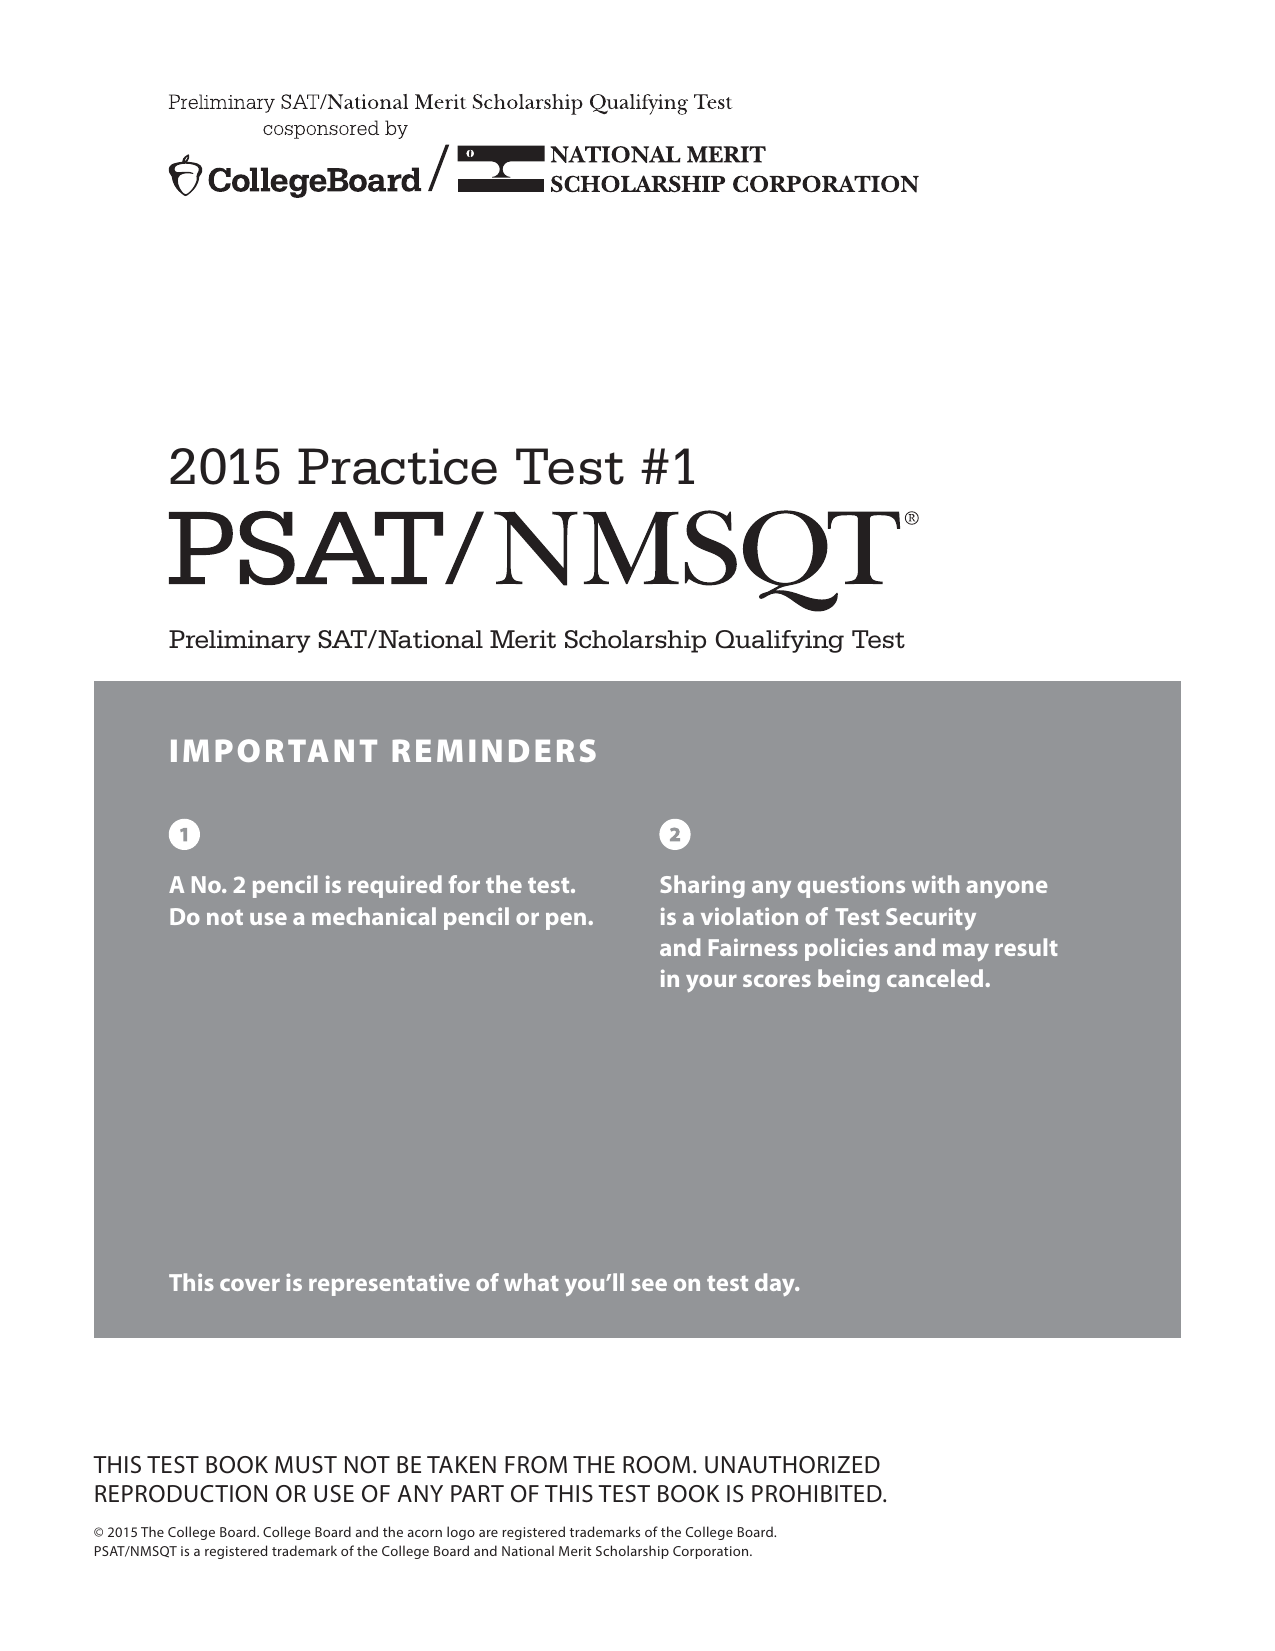 pdf-psat-nmsqt-practice-test-1